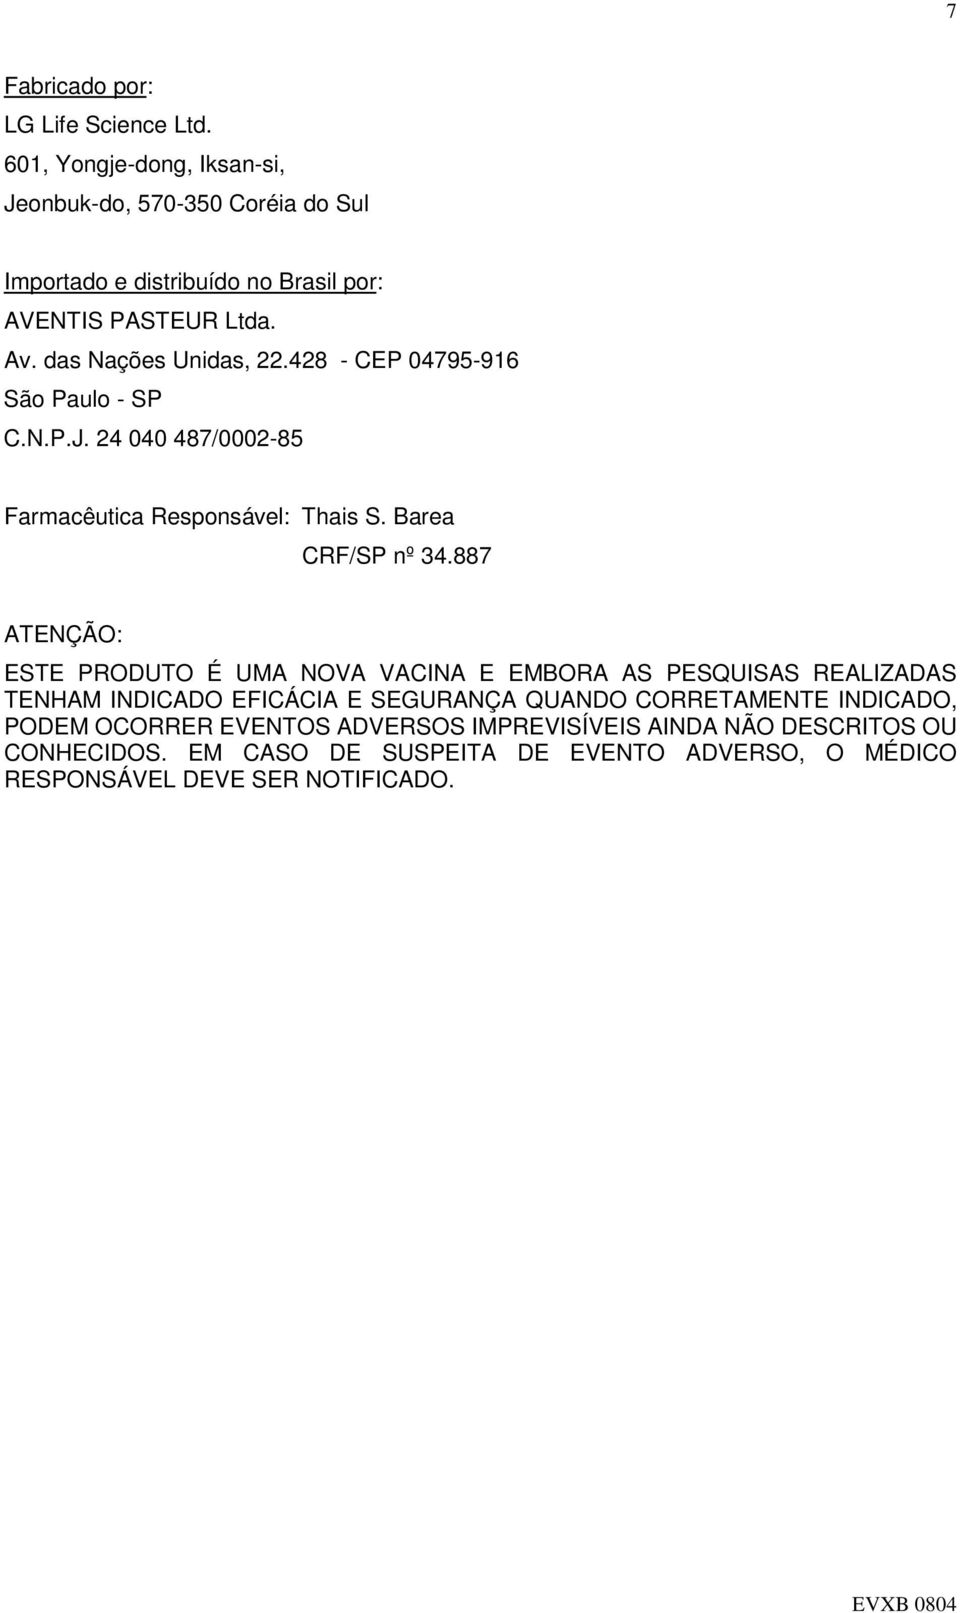 428 - CEP 04795-916 São Paulo - SP C.N.P.J. 24 040 487/0002-85 Farmacêutica Responsável: Thais S. Barea CRF/SP nº 34.